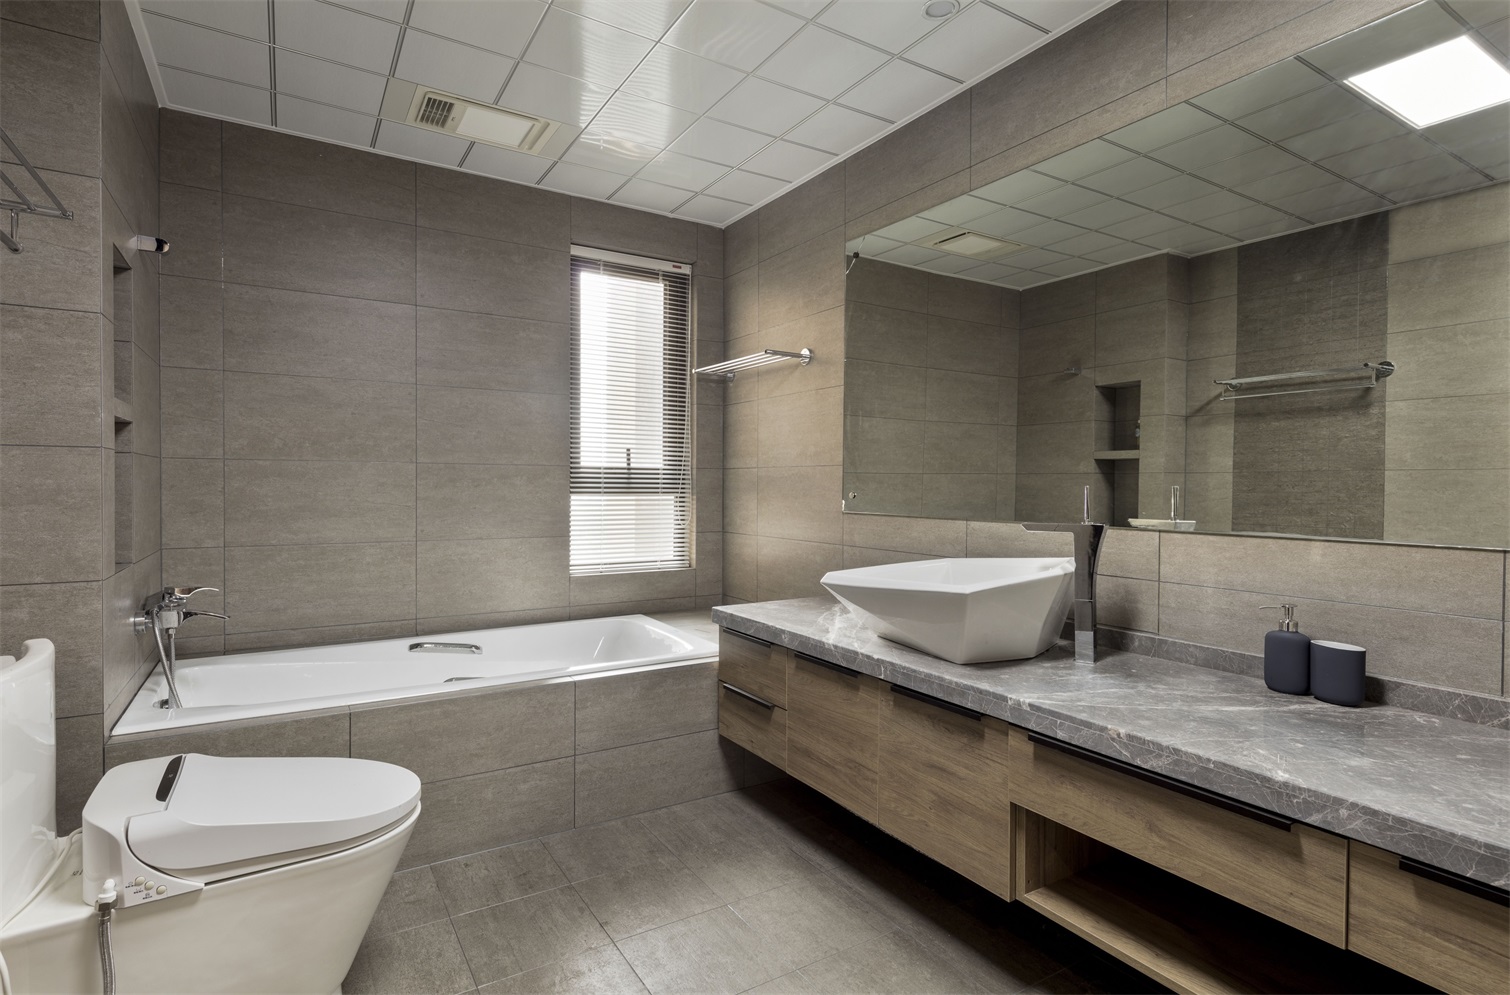 卫生间背景墙温润素雅，加入浴缸后空间更具艺术氛围，整体优雅大气。 